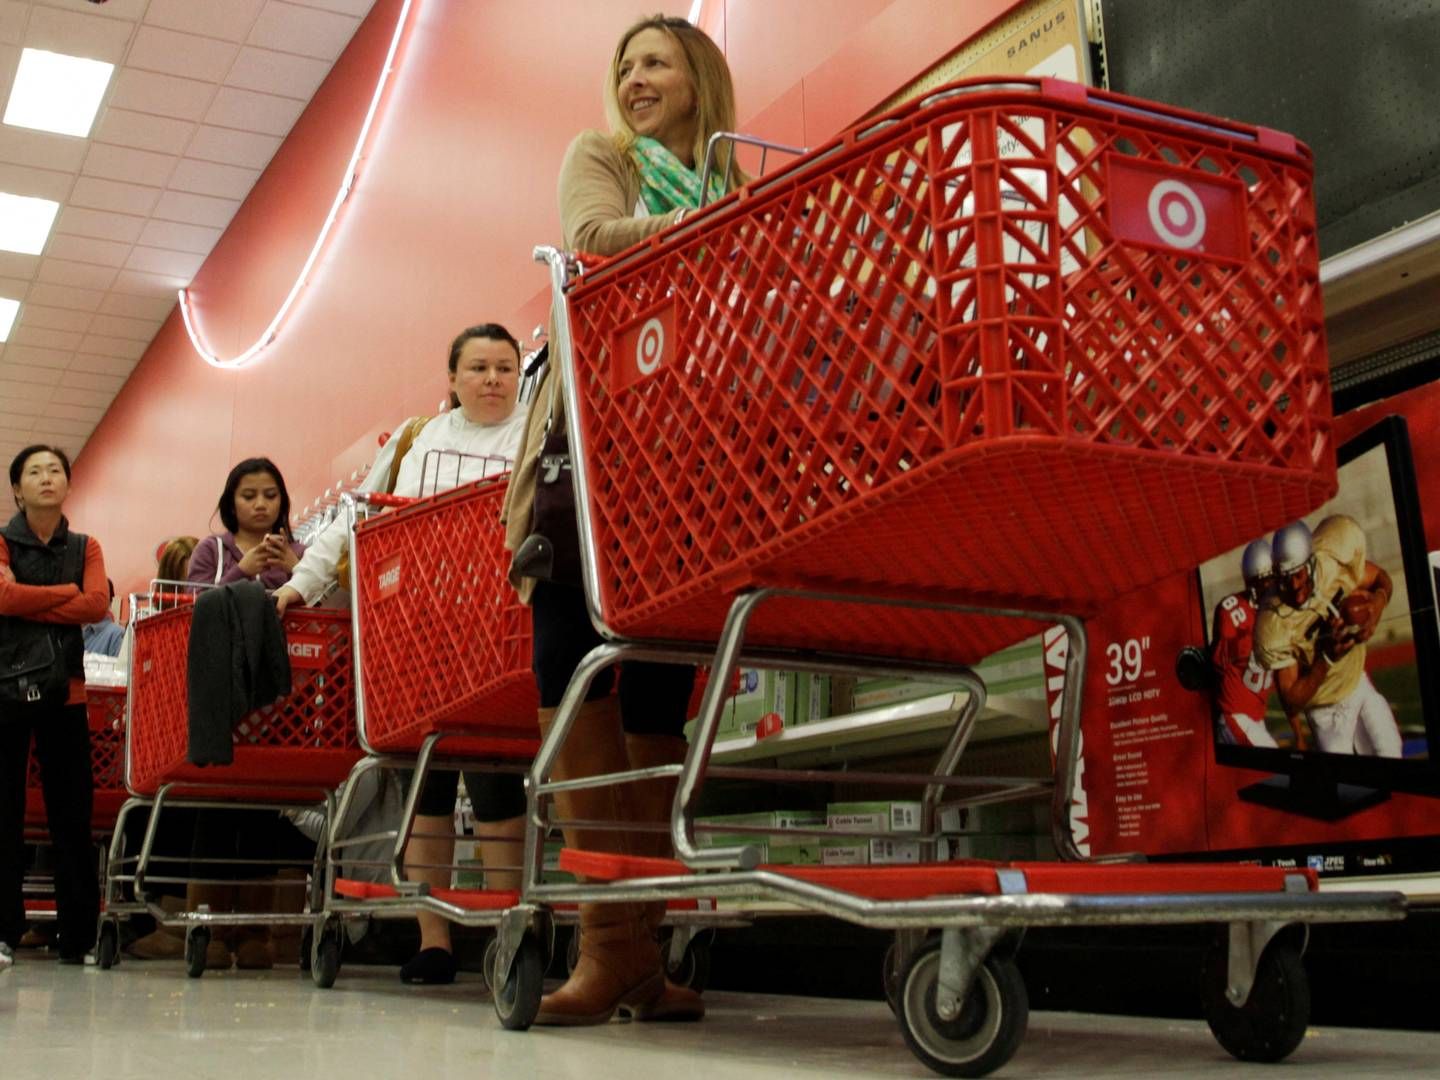 Den amerikanske detailkæde Target tager nu konsekvensen af et stigende antal butikstyverier. | Foto: Jonathan Alcorn